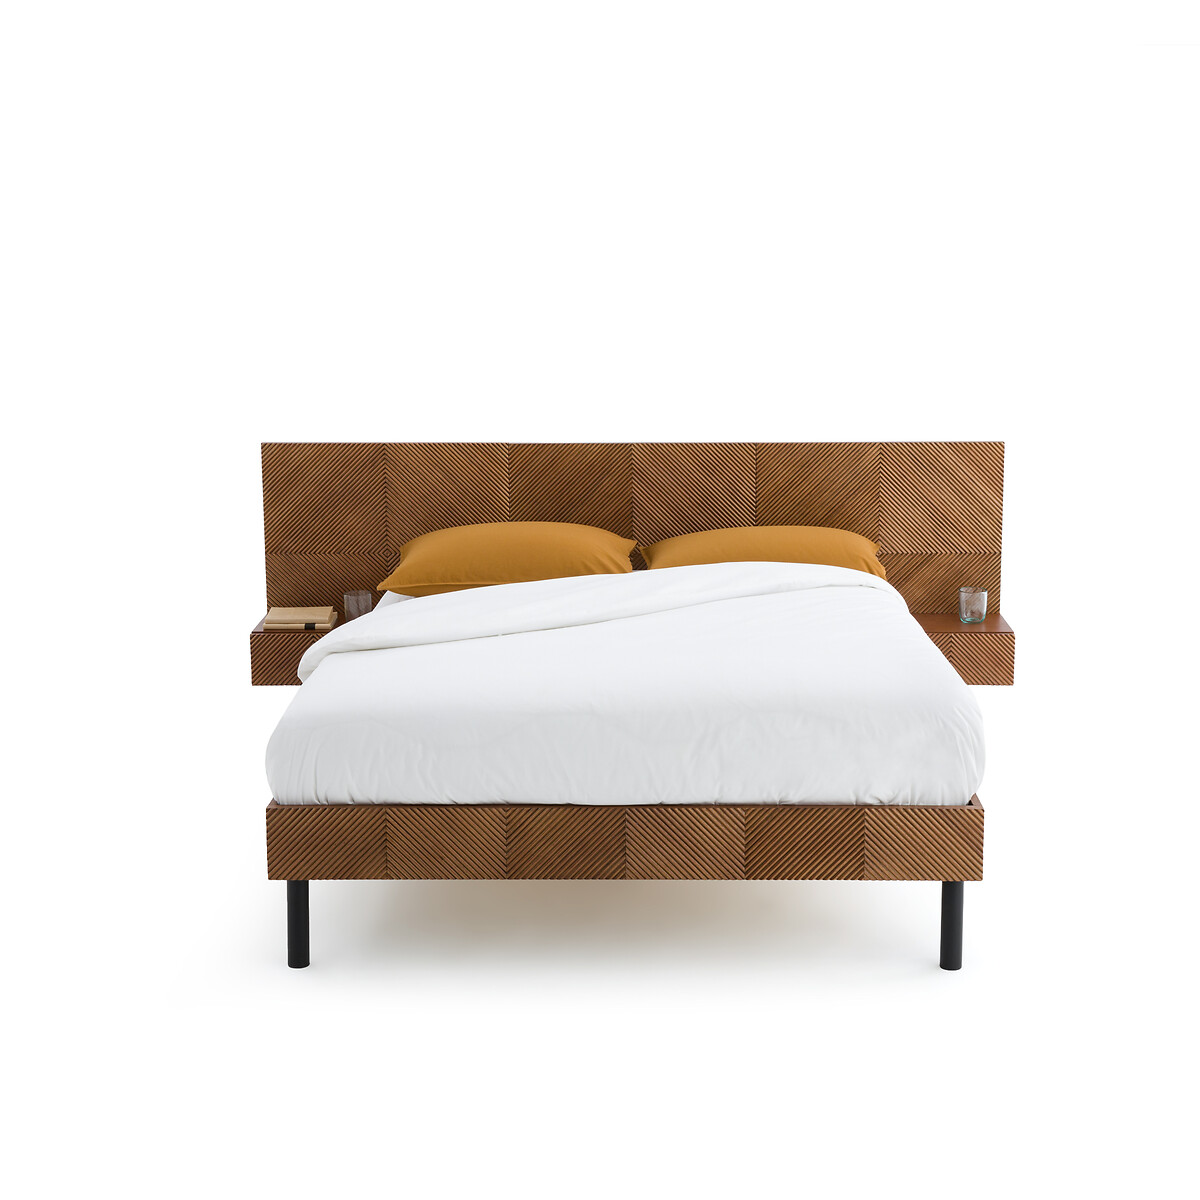 Кровать Со встроенными изголовьями и кроватным основанием Jrem 160 x 200 см каштановый LaRedoute, размер 160 x 200 см - фото 2